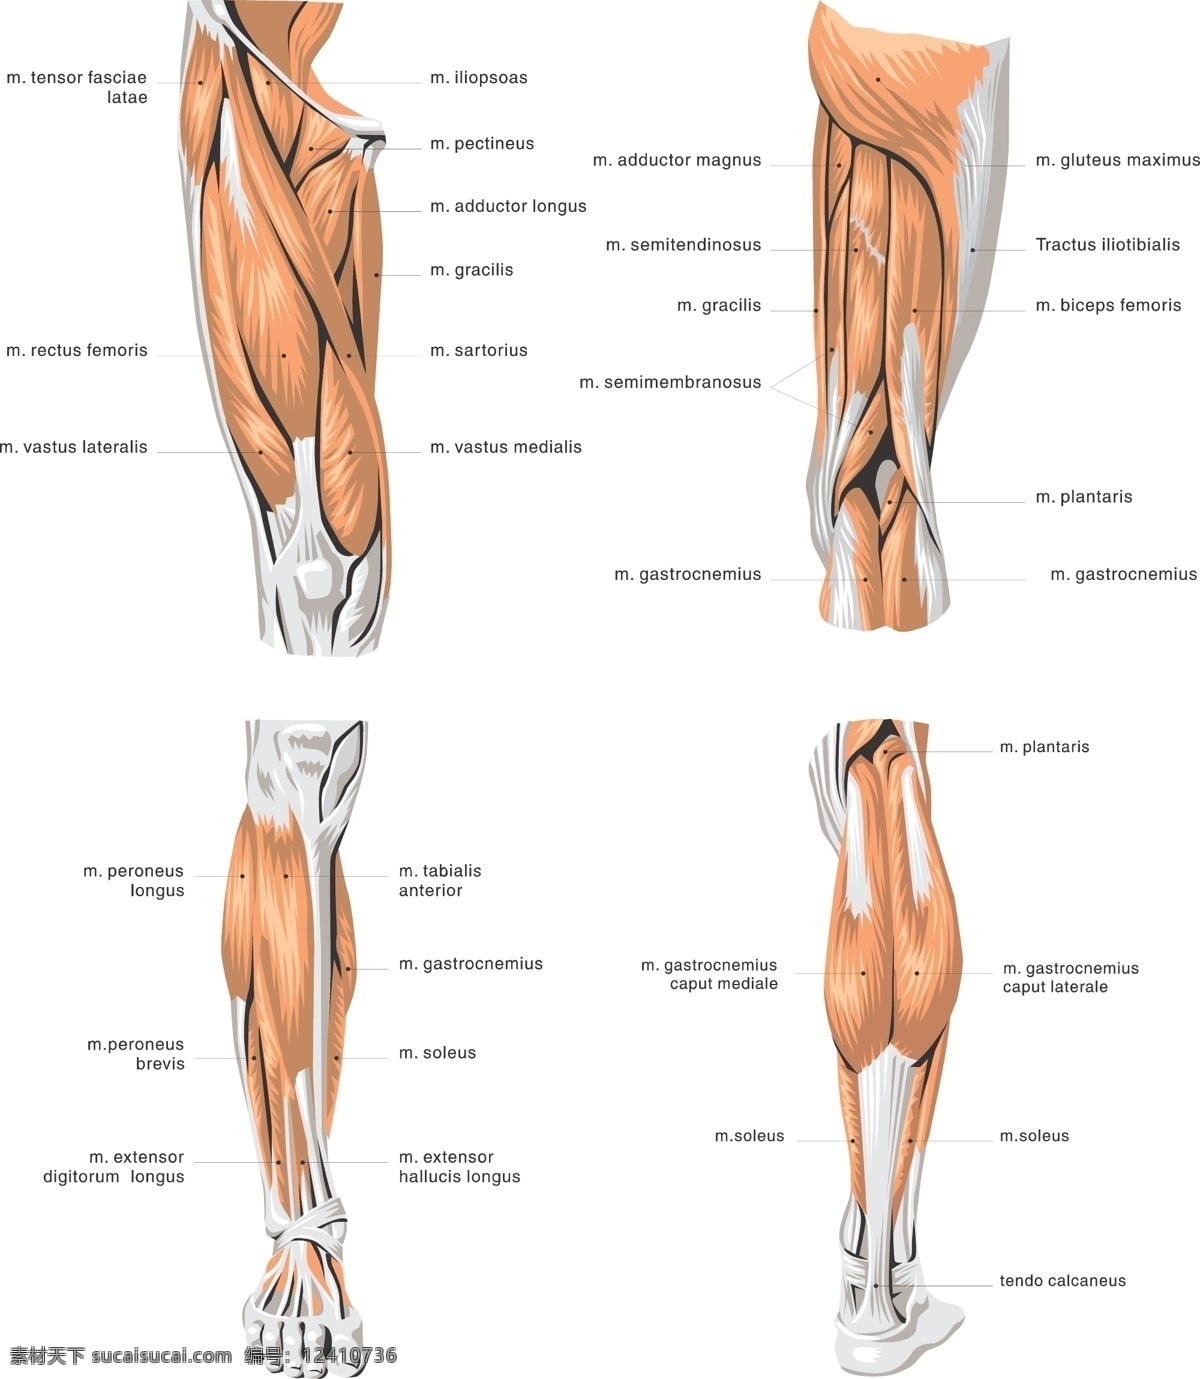 挂图 肌肉 人体 生活百科 医疗保健 医疗护理 人体肌肉 腿部肌肉 肌肉模型 肌肉组织 医用 图 人体组织 分布图 人体肌肉组织 医院挂图 矢量 海报 其他海报设计